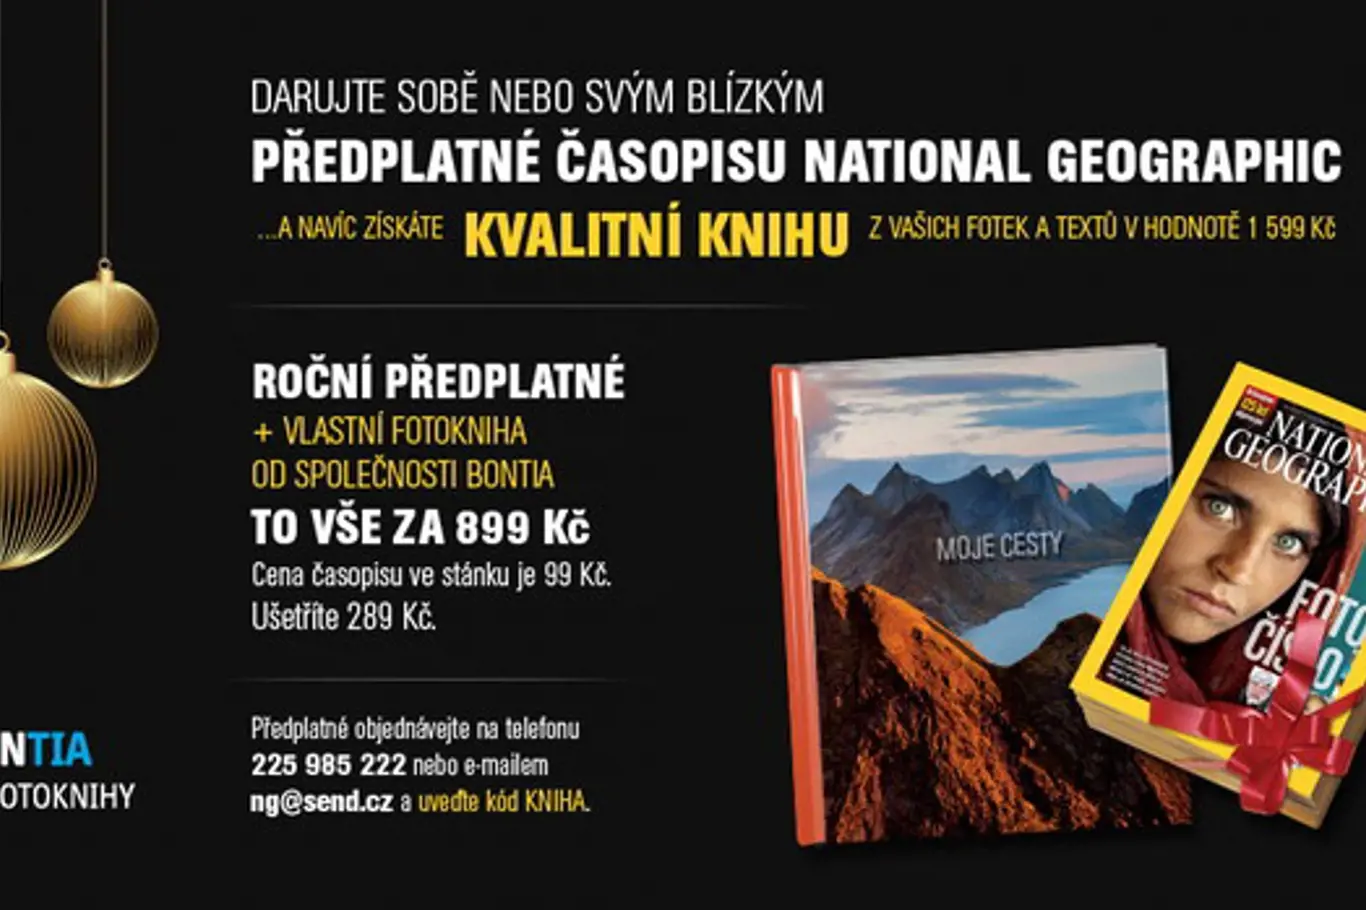 Darujte sobě nebo svým blízkým předplatné časopisu National Geographic